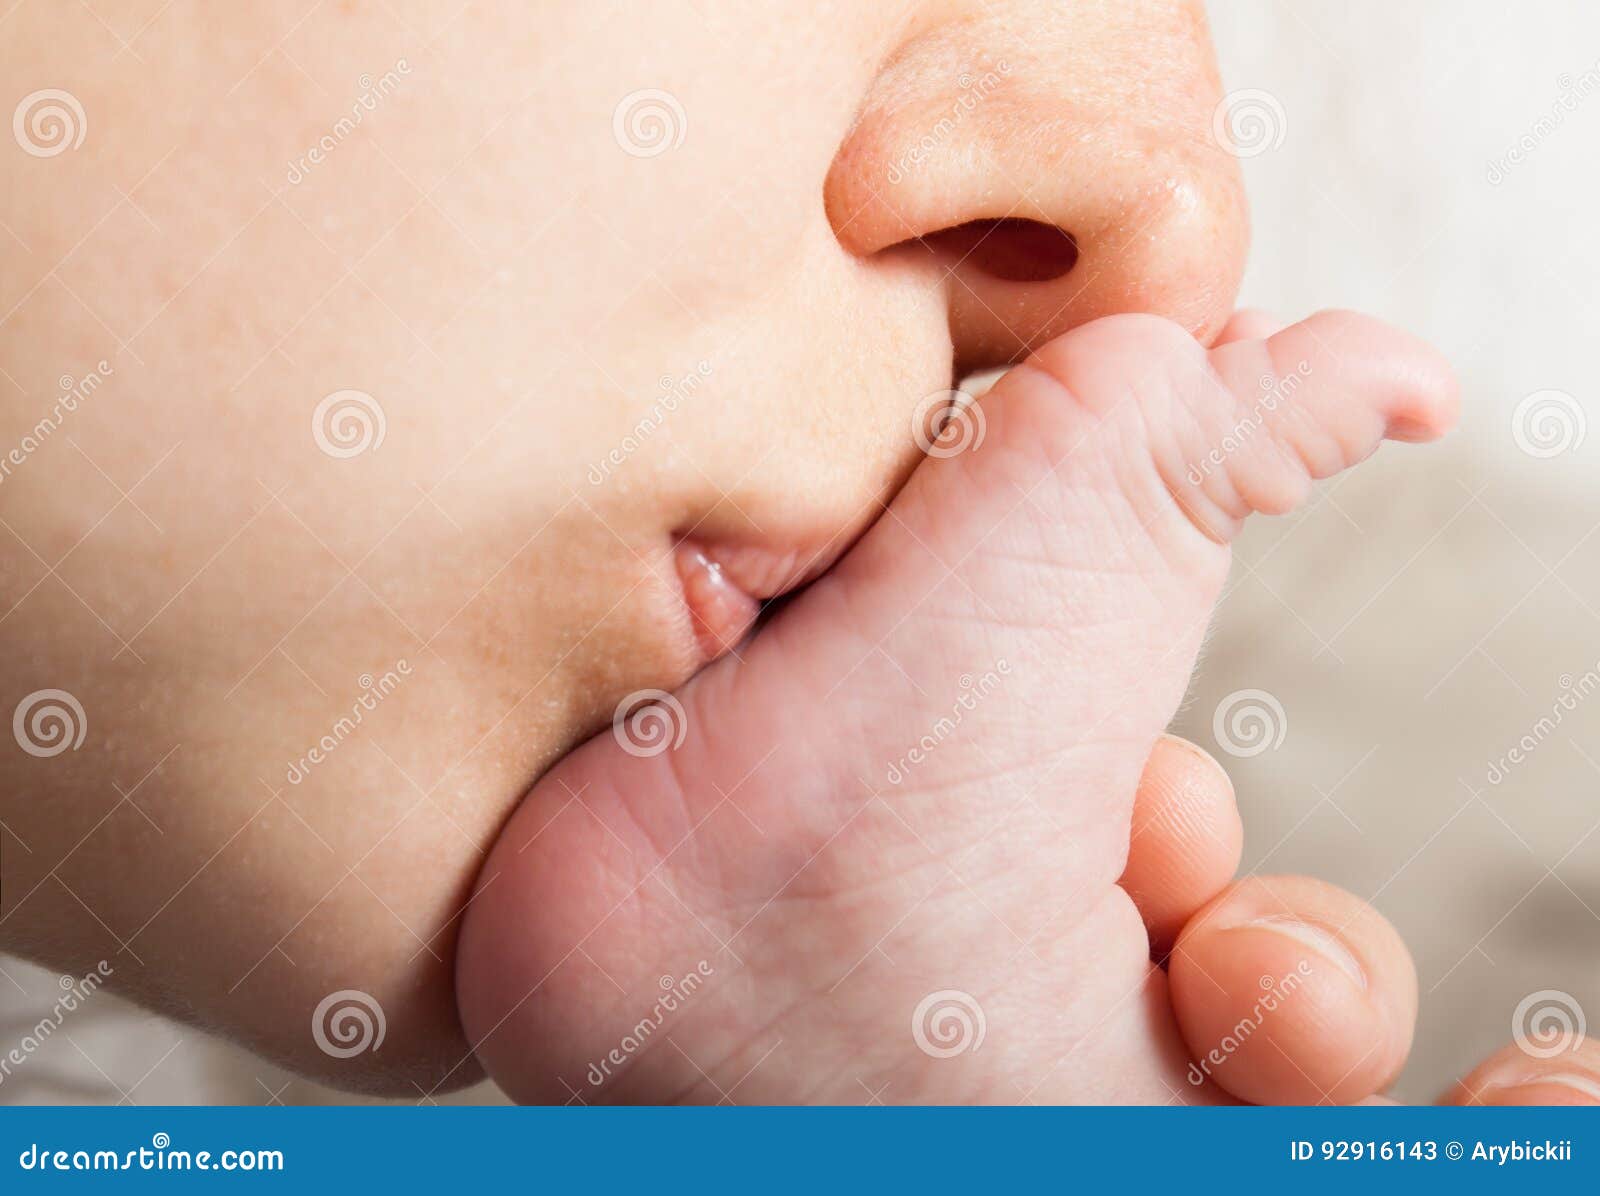 Целую ноги мамы. Поцелуй ножки младенца. Мама целует малыша. Мама целует ножки малышу. Мать целует новорожденного.